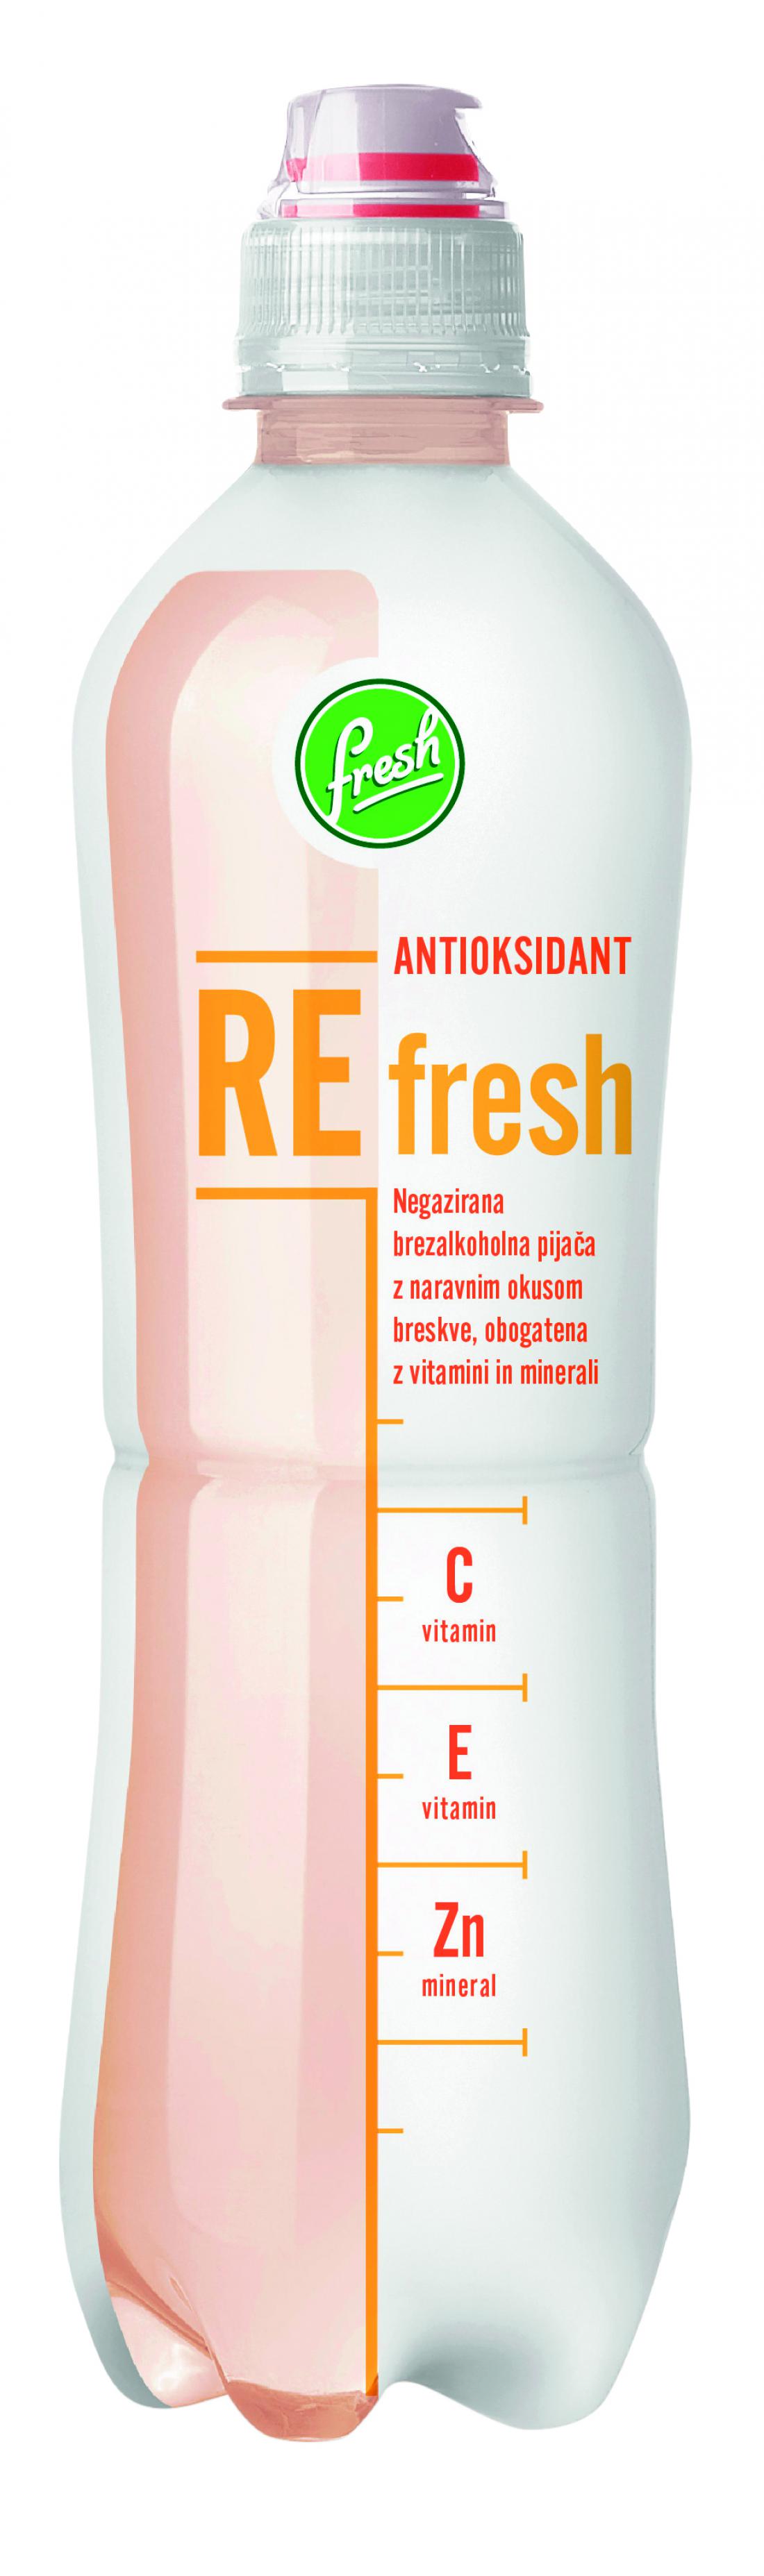 Antioksidant_Refresh.jpg